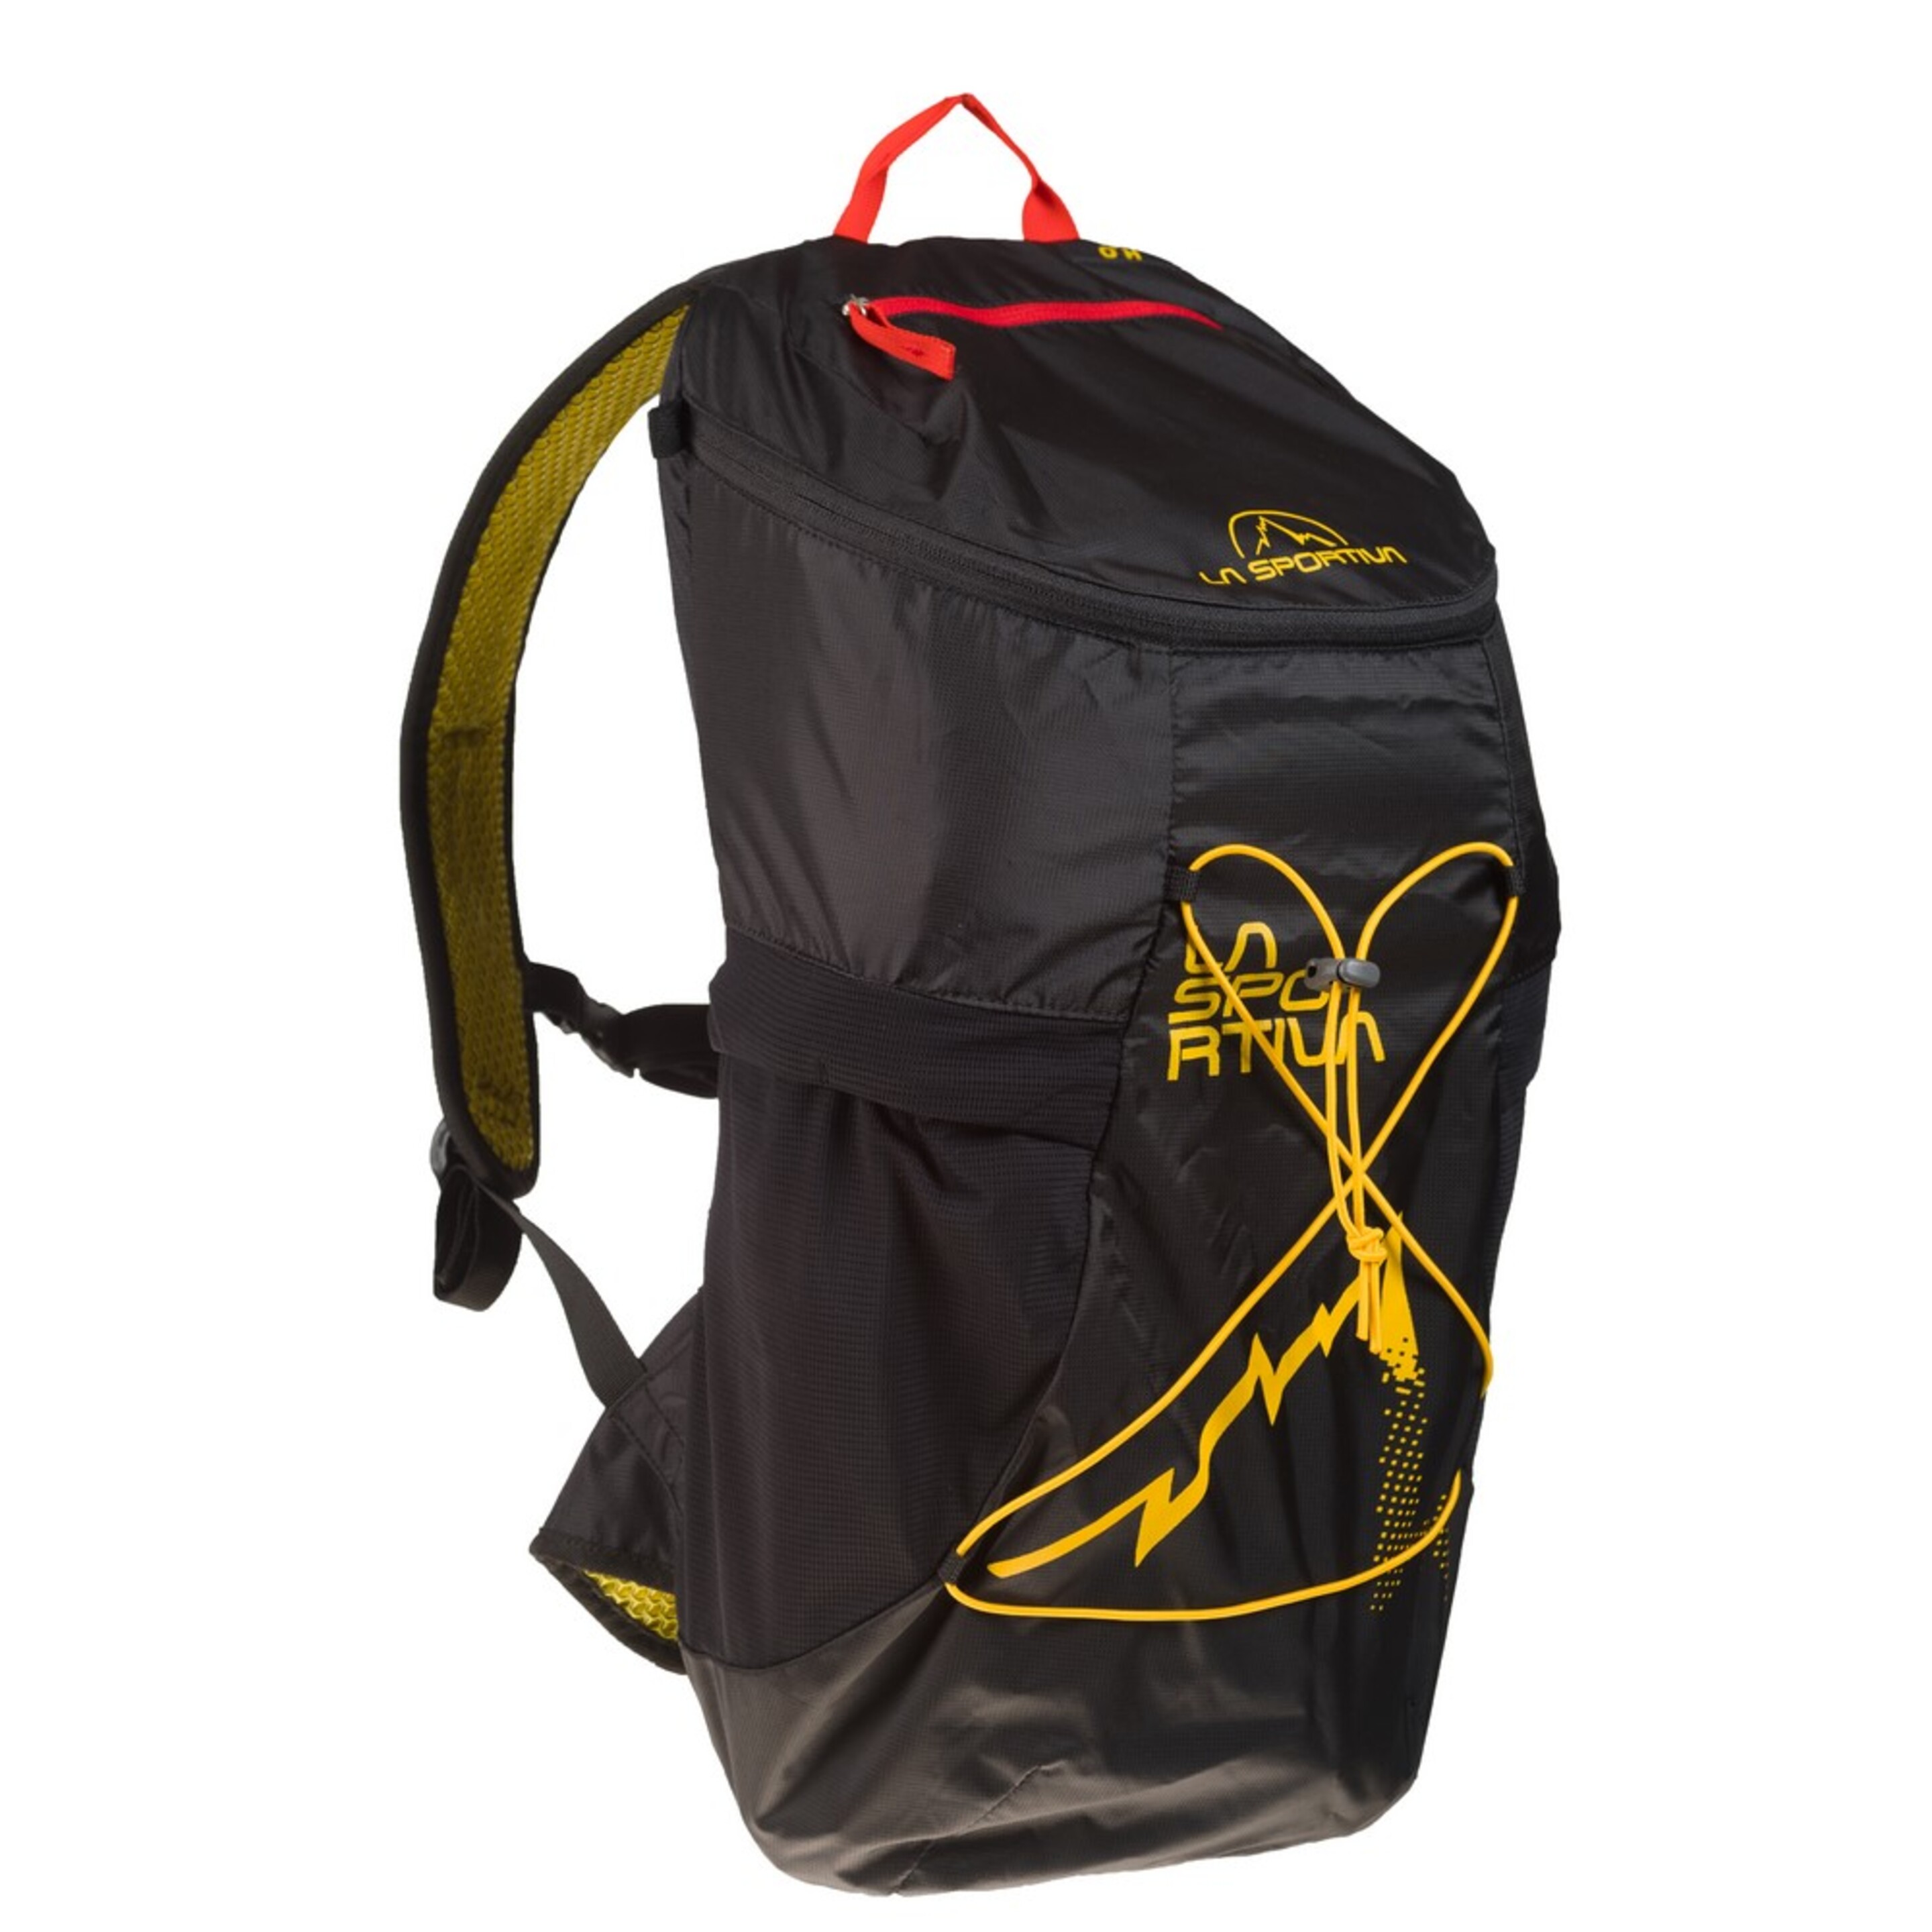 Mochila De Senderismo X-cursion Backpack La Sportiva - negro - 